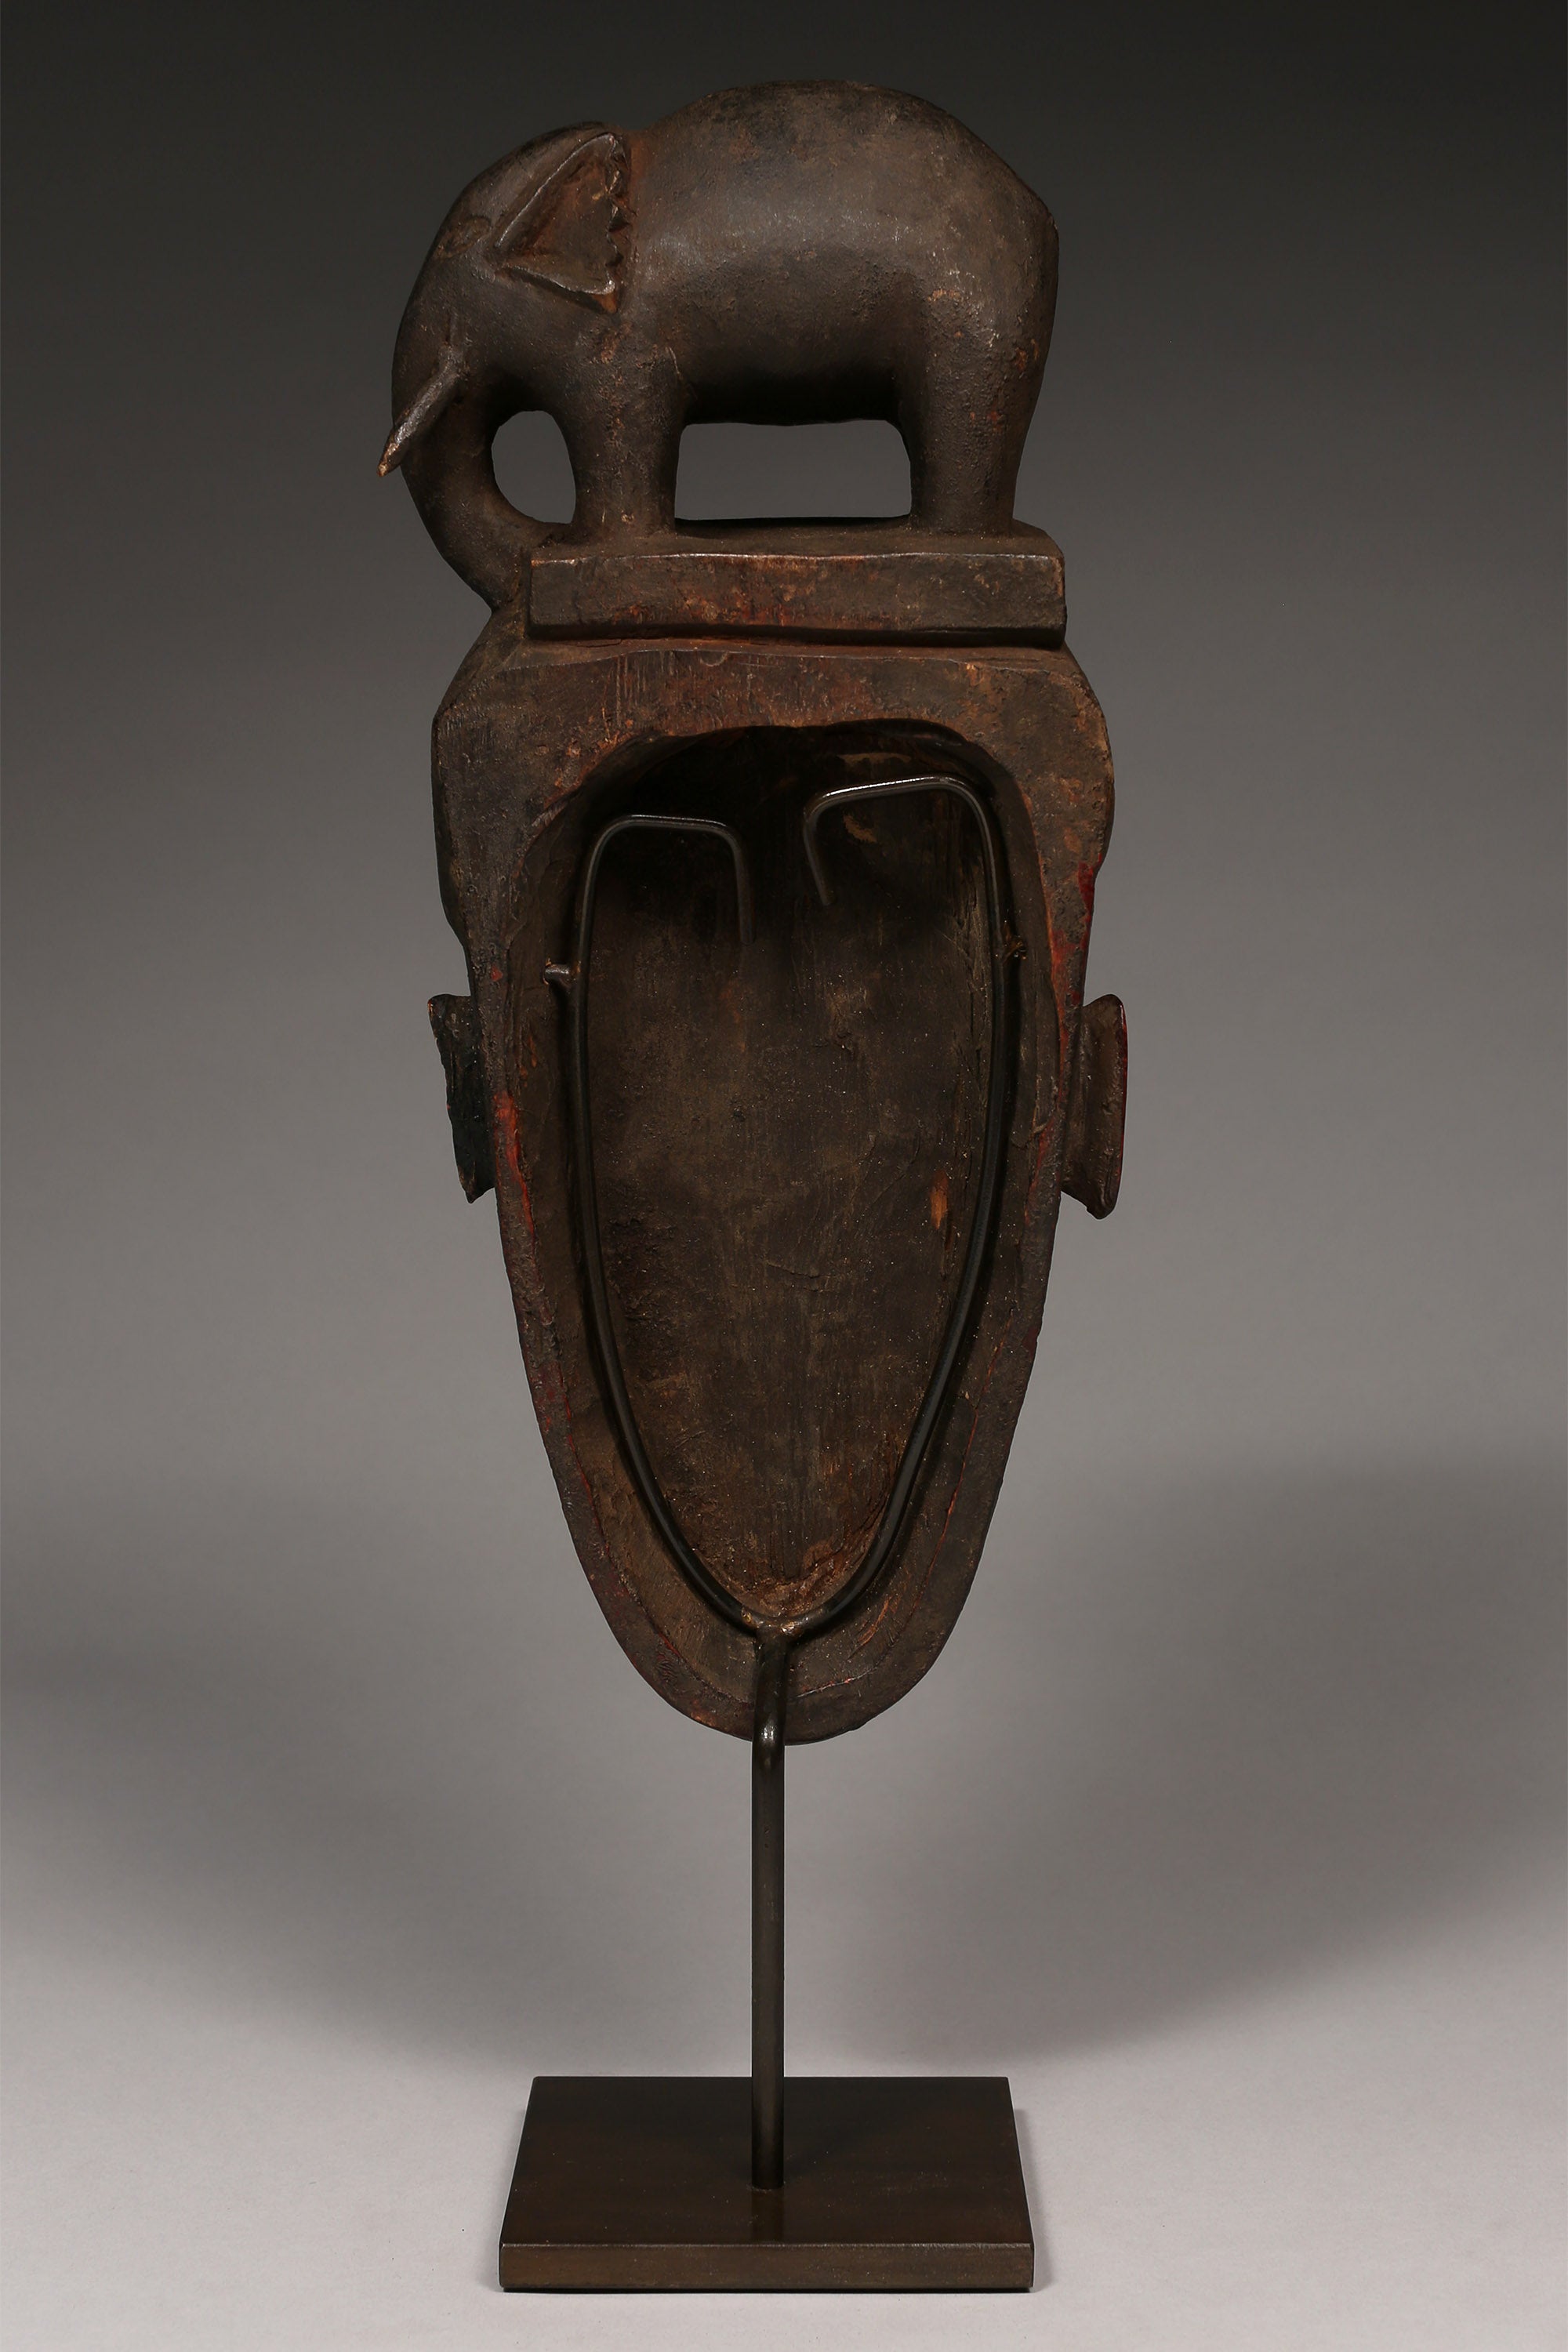 Tribal Masks - African Art - Wood Carving - Artwork Decor - Vintage - African Plural Art - Kpan Mask, Baule African Art, Carved Wood